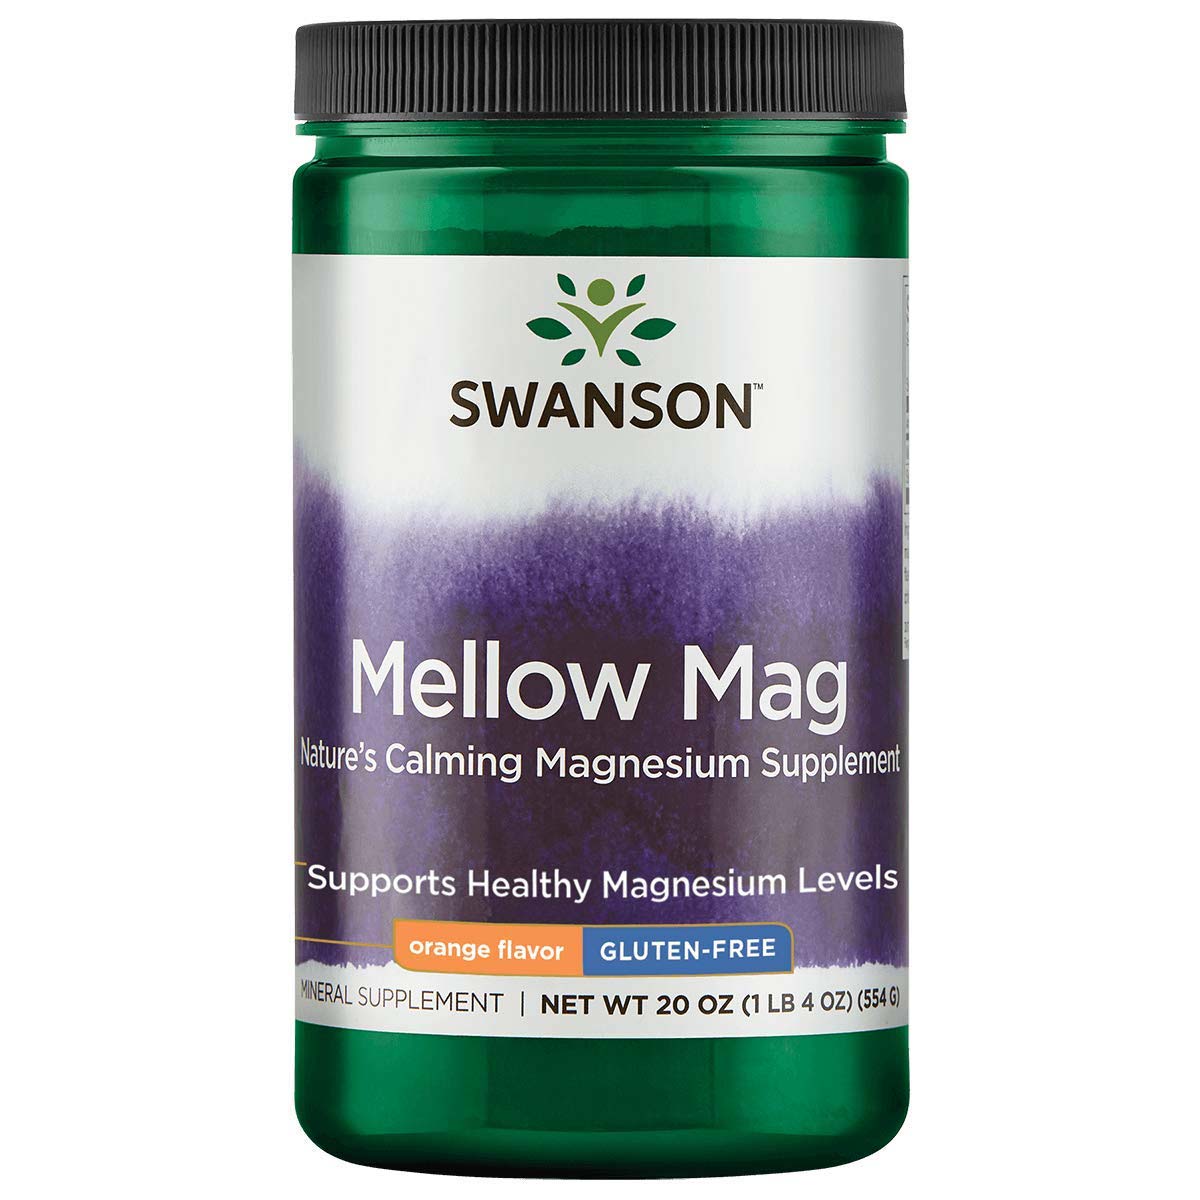 Swanson Mellow Mag 1LB Strawberry Kiwi